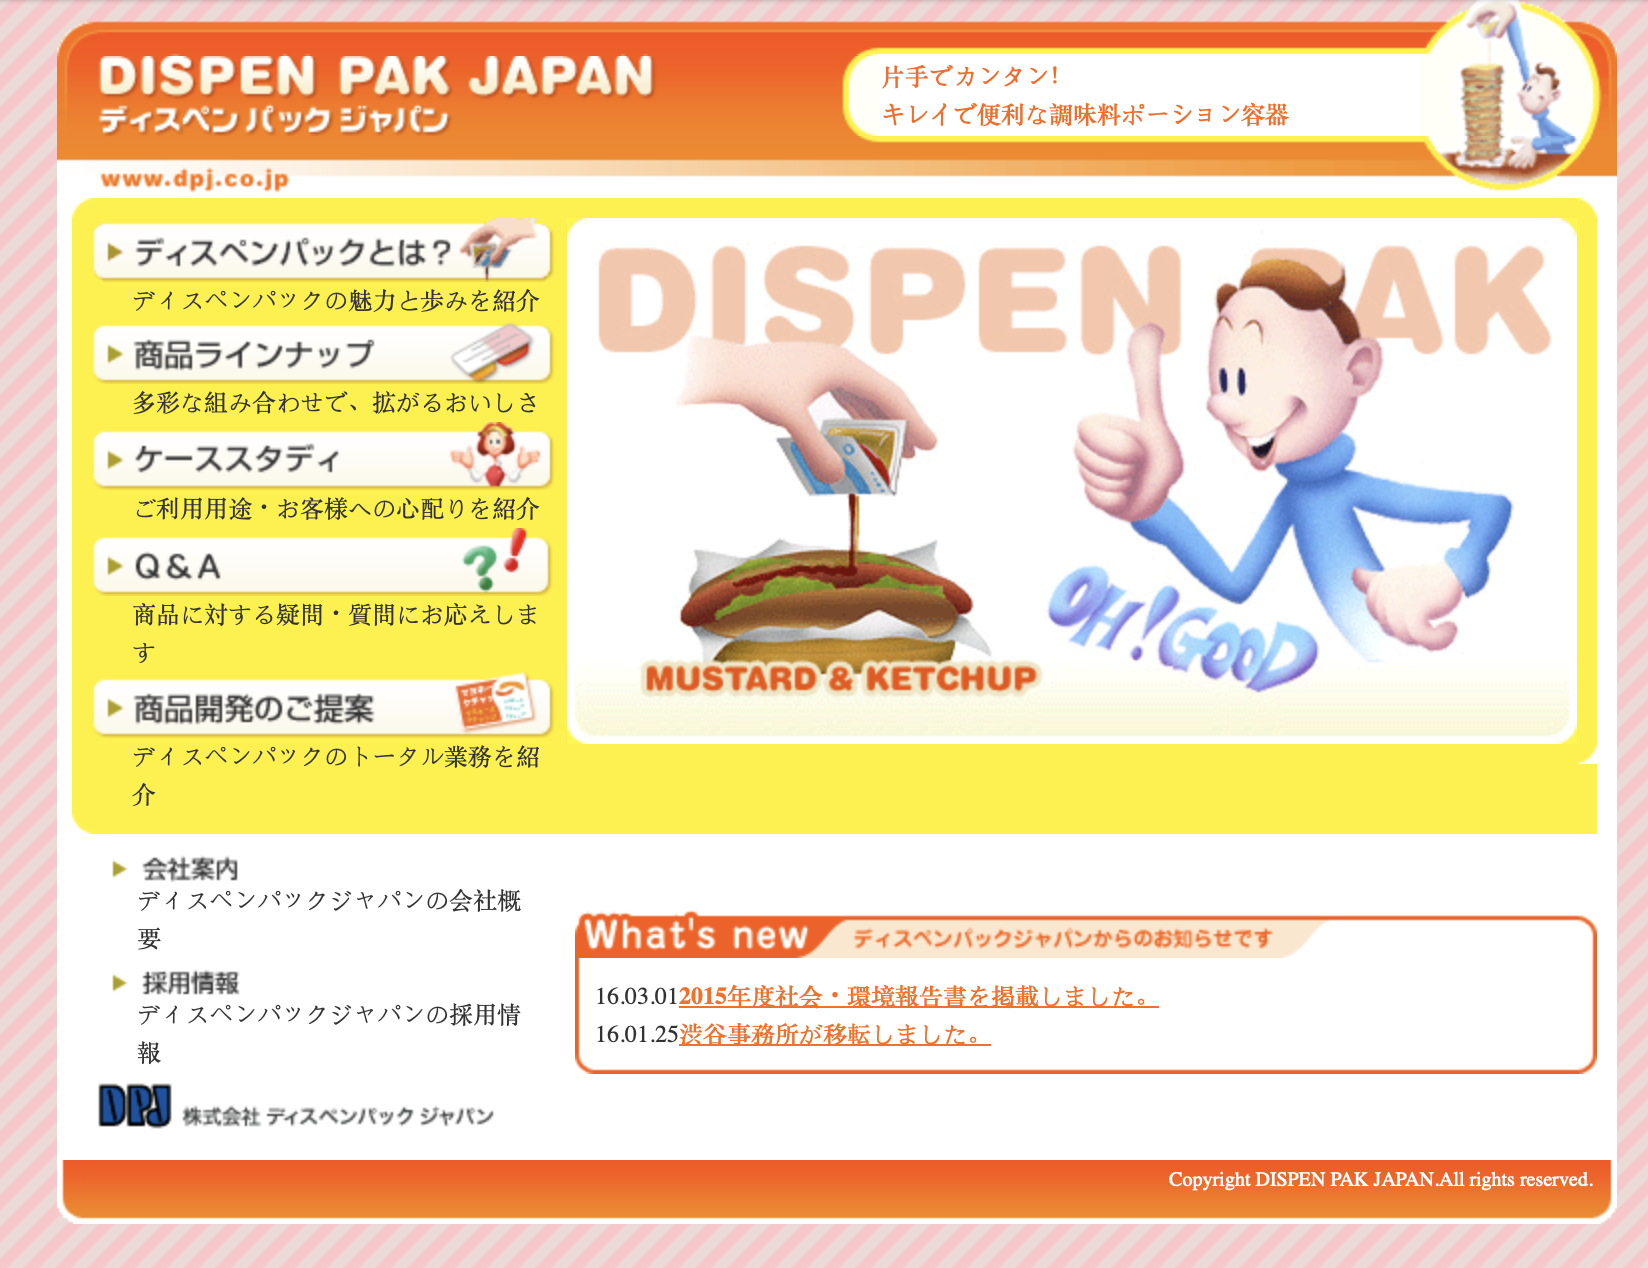 Le vieux site de DispenPAK Japan